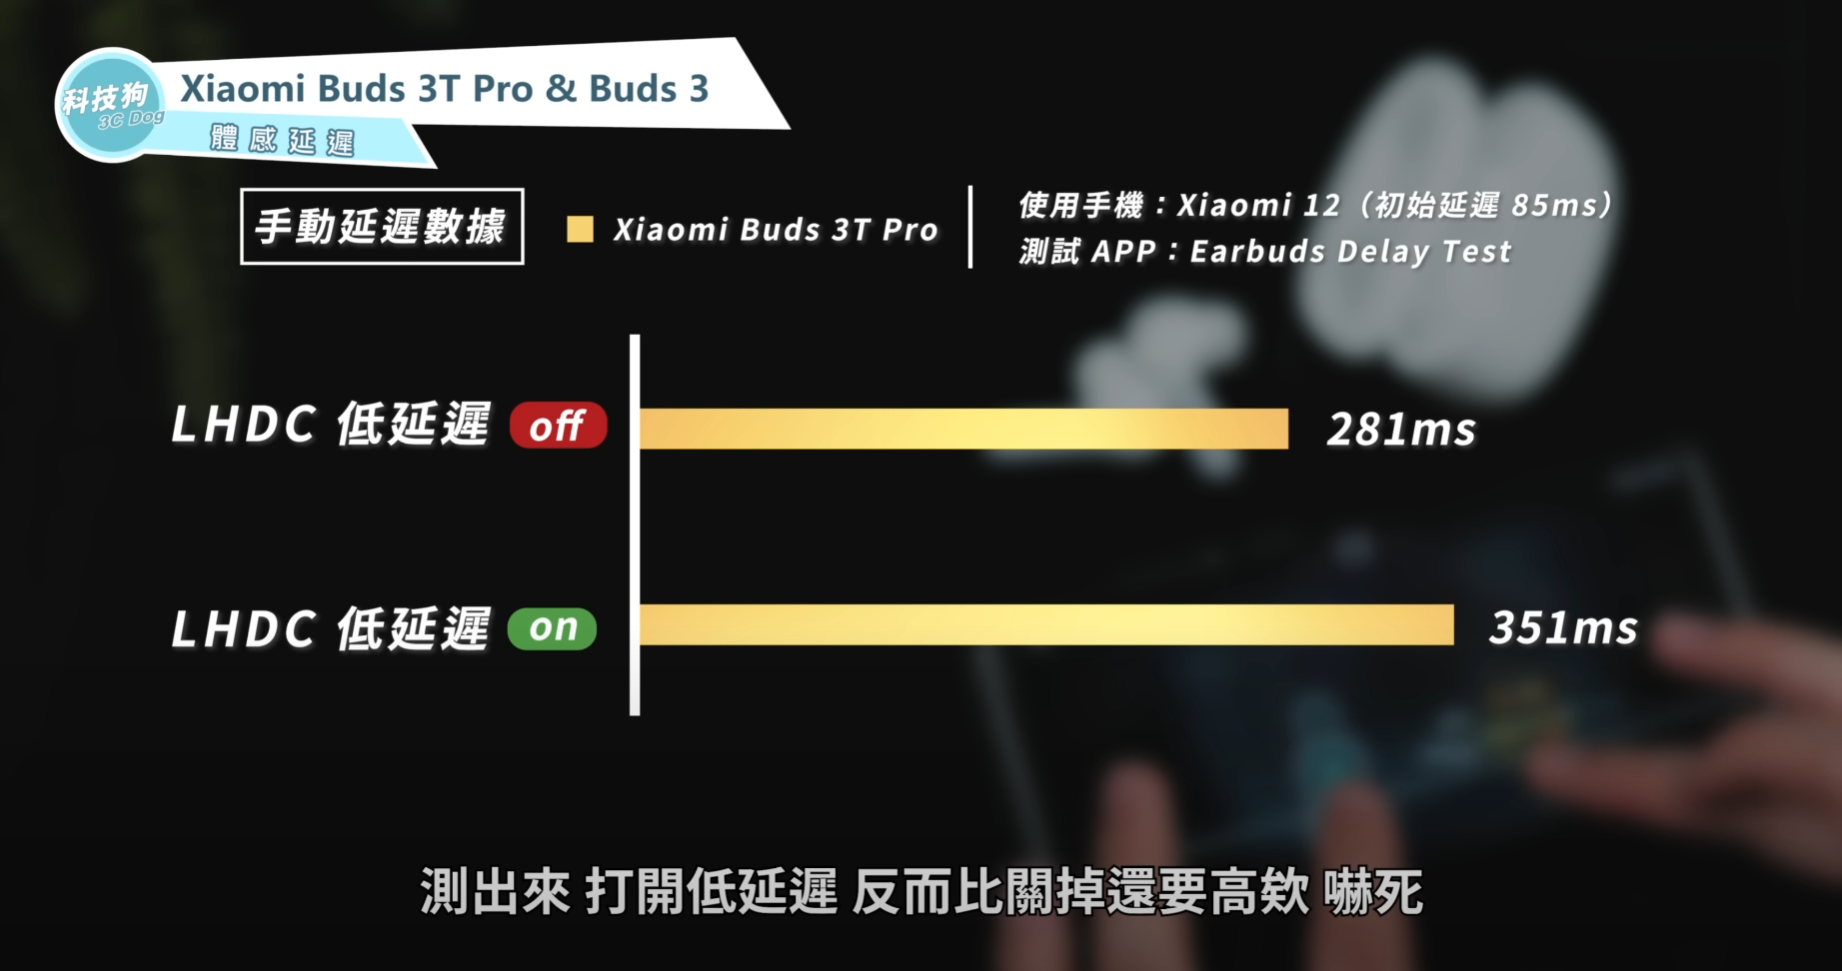 小米耳機差在哪？Xiaomi Buds 3T Pro & Xiaomi Buds 3 深度比較｜Mi 真無線藍牙耳機、ANC 主動降噪、Qi 無線充電、IP55 防水防塵、ptt｜科技狗 - PTT, Xiaomi Buds 3 ptt, Xiaomi Buds 3 優點, Xiaomi Buds 3 缺點, Xiaomi Buds 3 評價, Xiaomi Buds 3 評測, Xiaomi Buds 3 開箱, Xiaomi Buds 3T Pro ptt, Xiaomi Buds 3T Pro 優點, Xiaomi Buds 3T Pro 缺點, Xiaomi Buds 3T Pro 評價, Xiaomi Buds 3T Pro 評測, Xiaomi Buds 3T Pro 開箱, 小米, 小米 Buds 3 ptt, 小米 Buds 3 優點, 小米 Buds 3 缺點, 小米 Buds 3 評價, 小米 Buds 3 評測, 小米 Buds 3 開箱, 小米 Buds 3T Pro ptt, 小米 Buds 3T Pro 優點, 小米 Buds 3T Pro 缺點, 小米 Buds 3T Pro 評價, 小米 Buds 3T Pro 評測, 小米 Buds 3T Pro 開箱, 小米耳機, 小米耳機 ptt, 真無線藍牙耳機, 科技狗, 耳機, 藍牙耳機, 評測, 開箱, 開箱評測, 體驗 - 科技狗 3C DOG